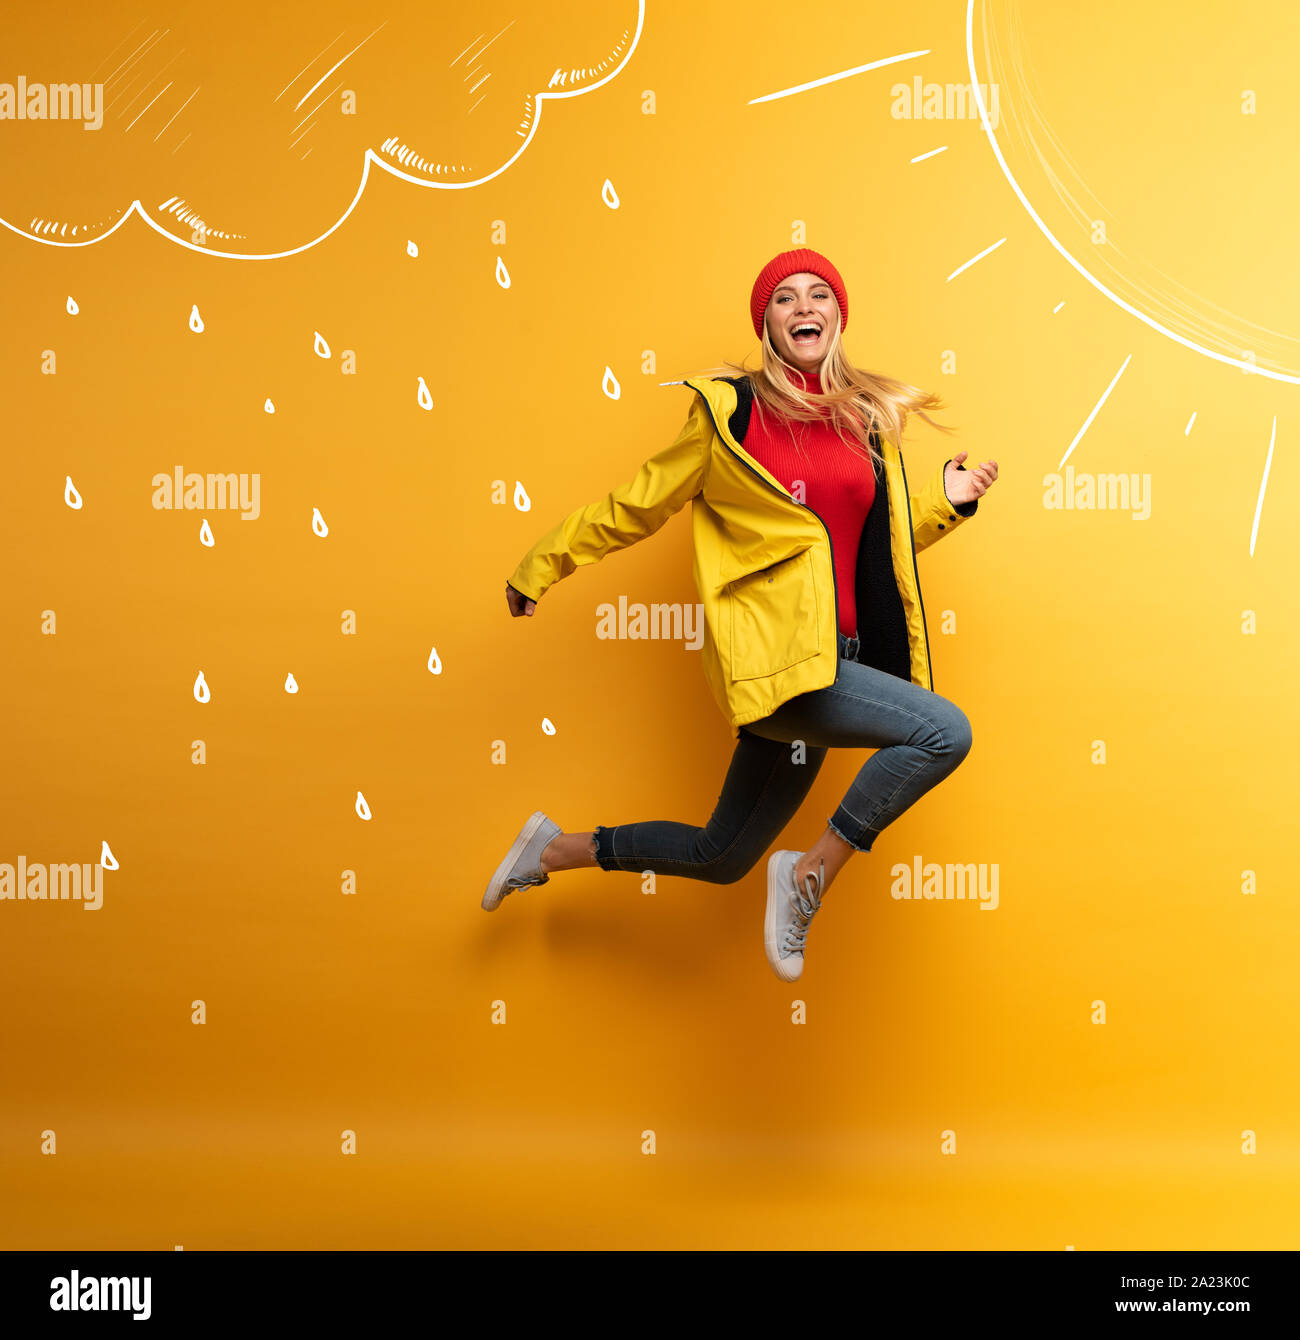 Mädchen mit Jacke springt auf die Sonne aus dem regnerischen Wetter. Freudige Ausdruck. Gelber Hintergrund Stockfoto